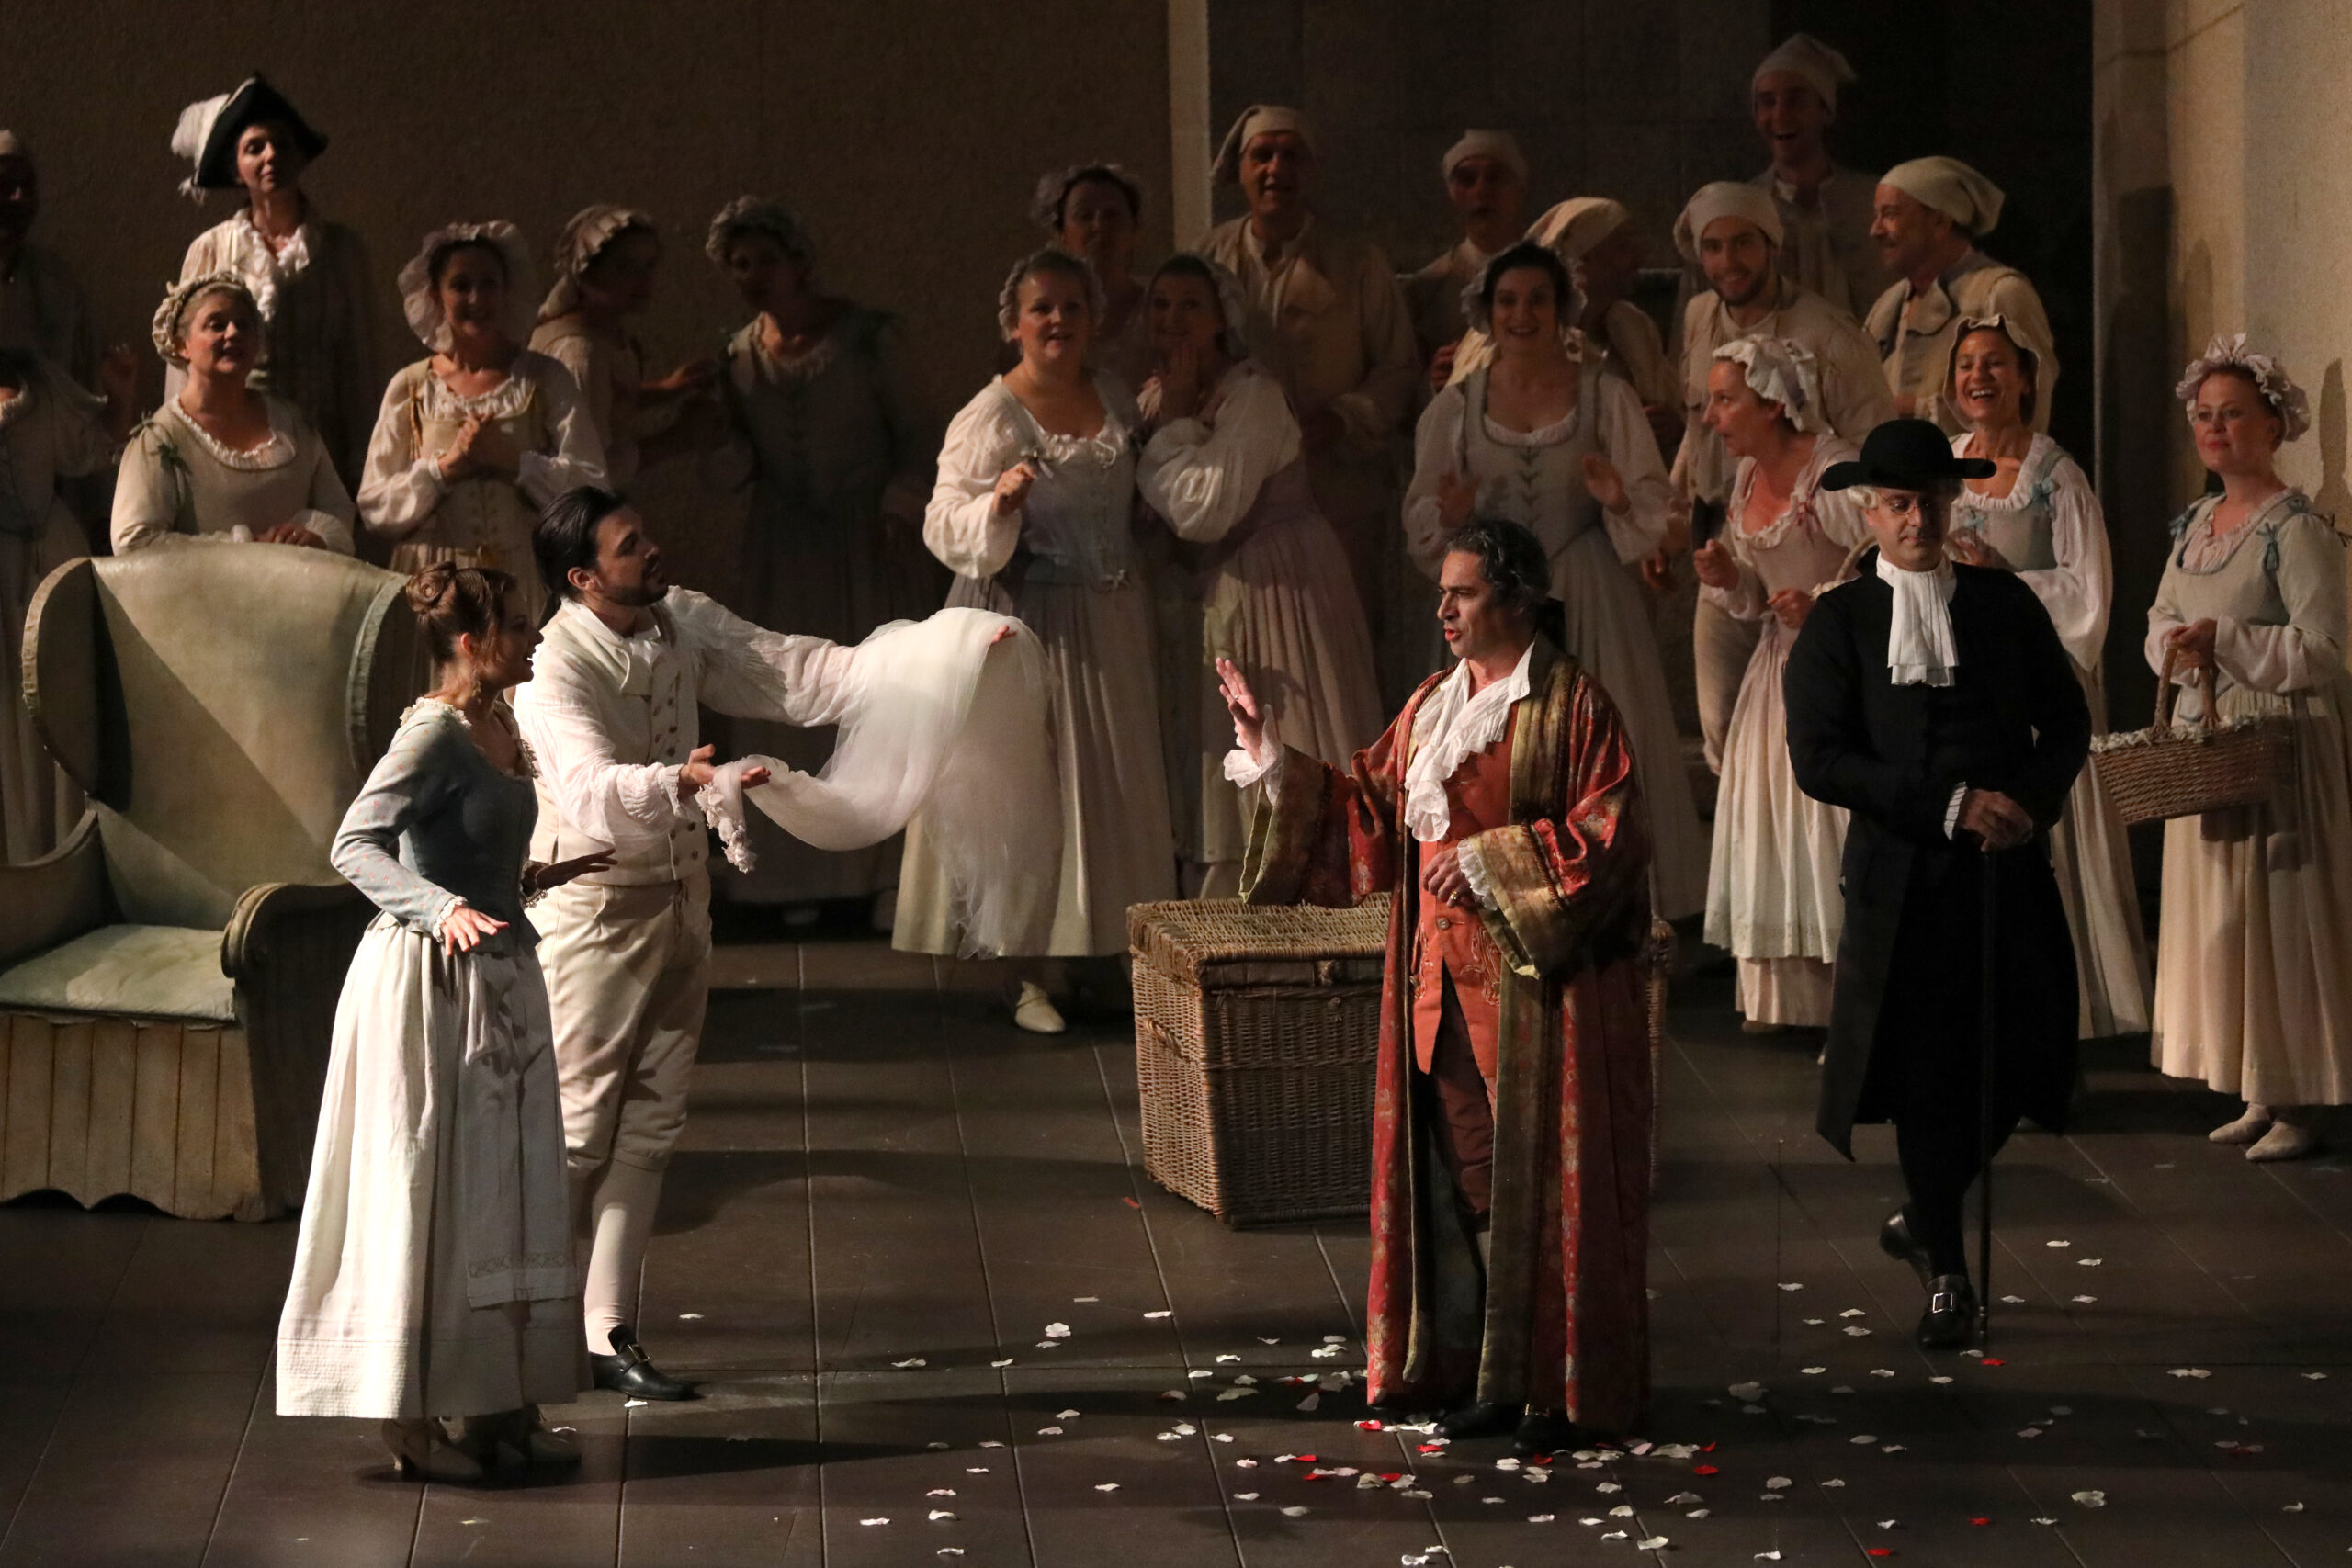 Una escena de "Le nozze di Figaro" en La Scala / Foto: Brescia e Amisano - Teatro alla Scala